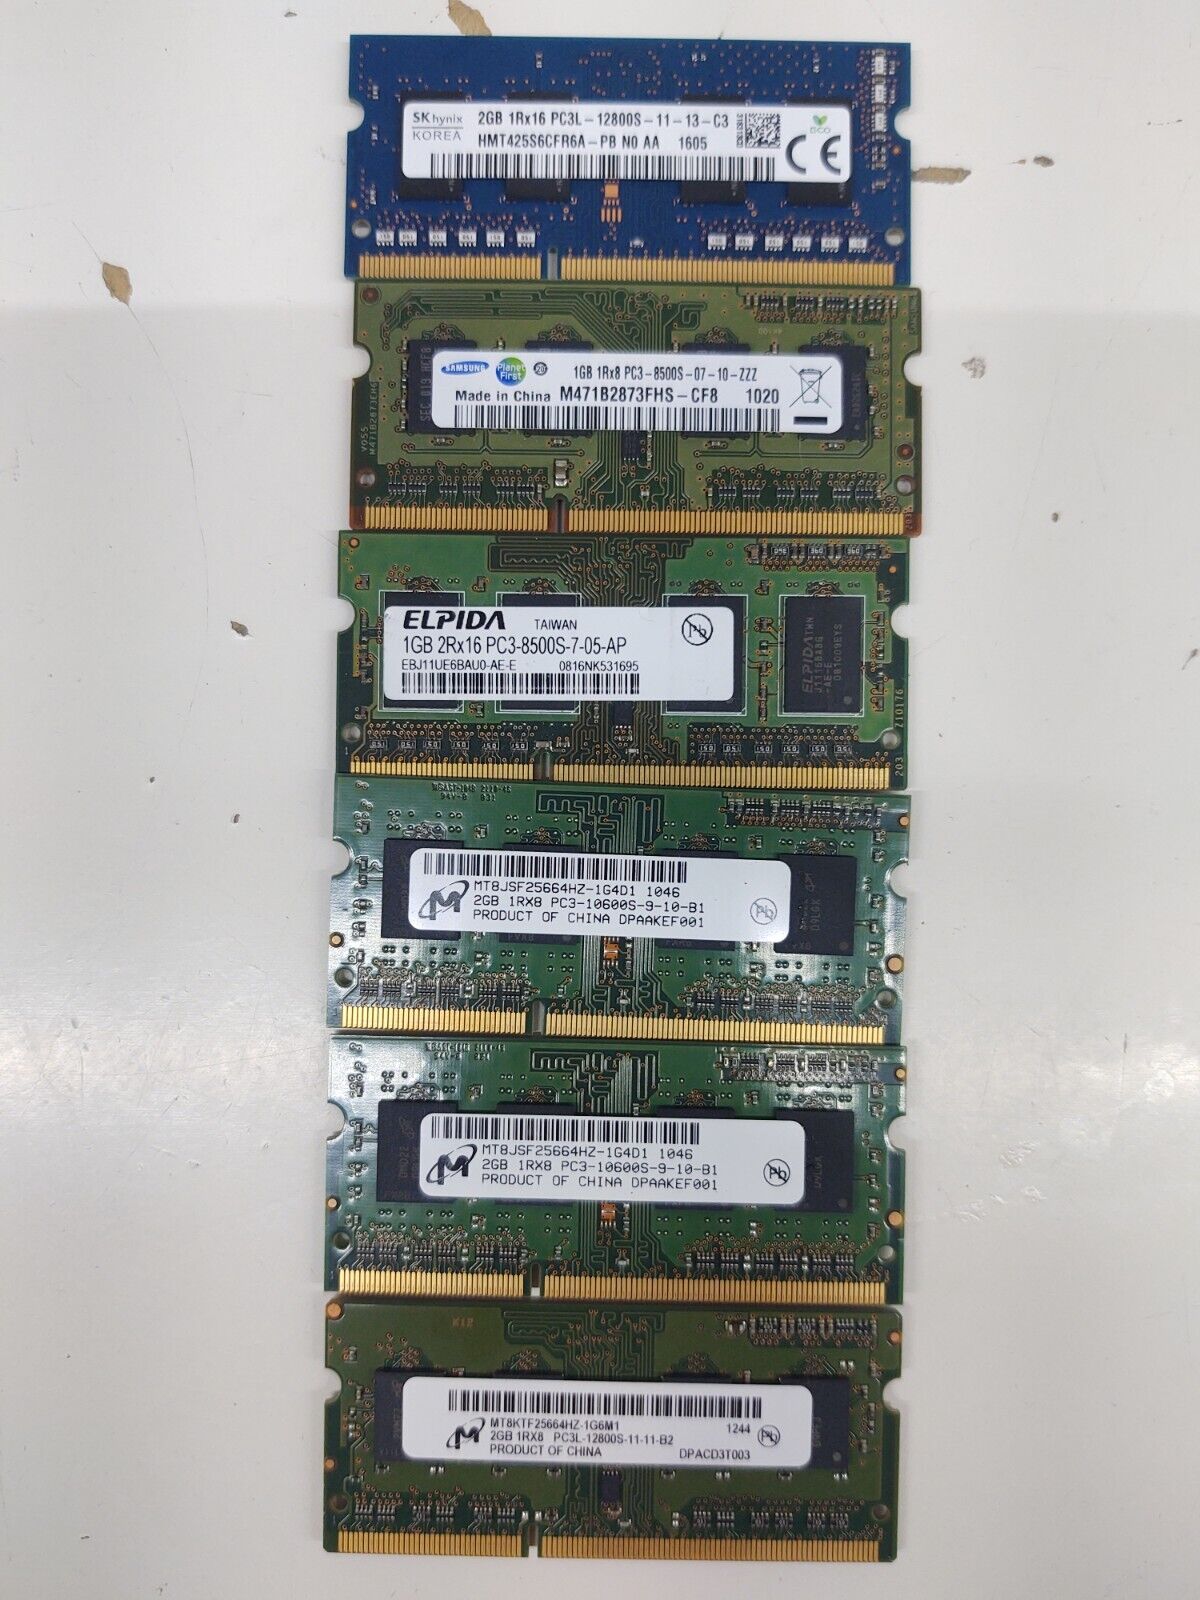 8GB (4x2GB) PC3-10600S 2GB (2X1GB) PC3-8500S 1GB Laptop RAM (Various Brands)